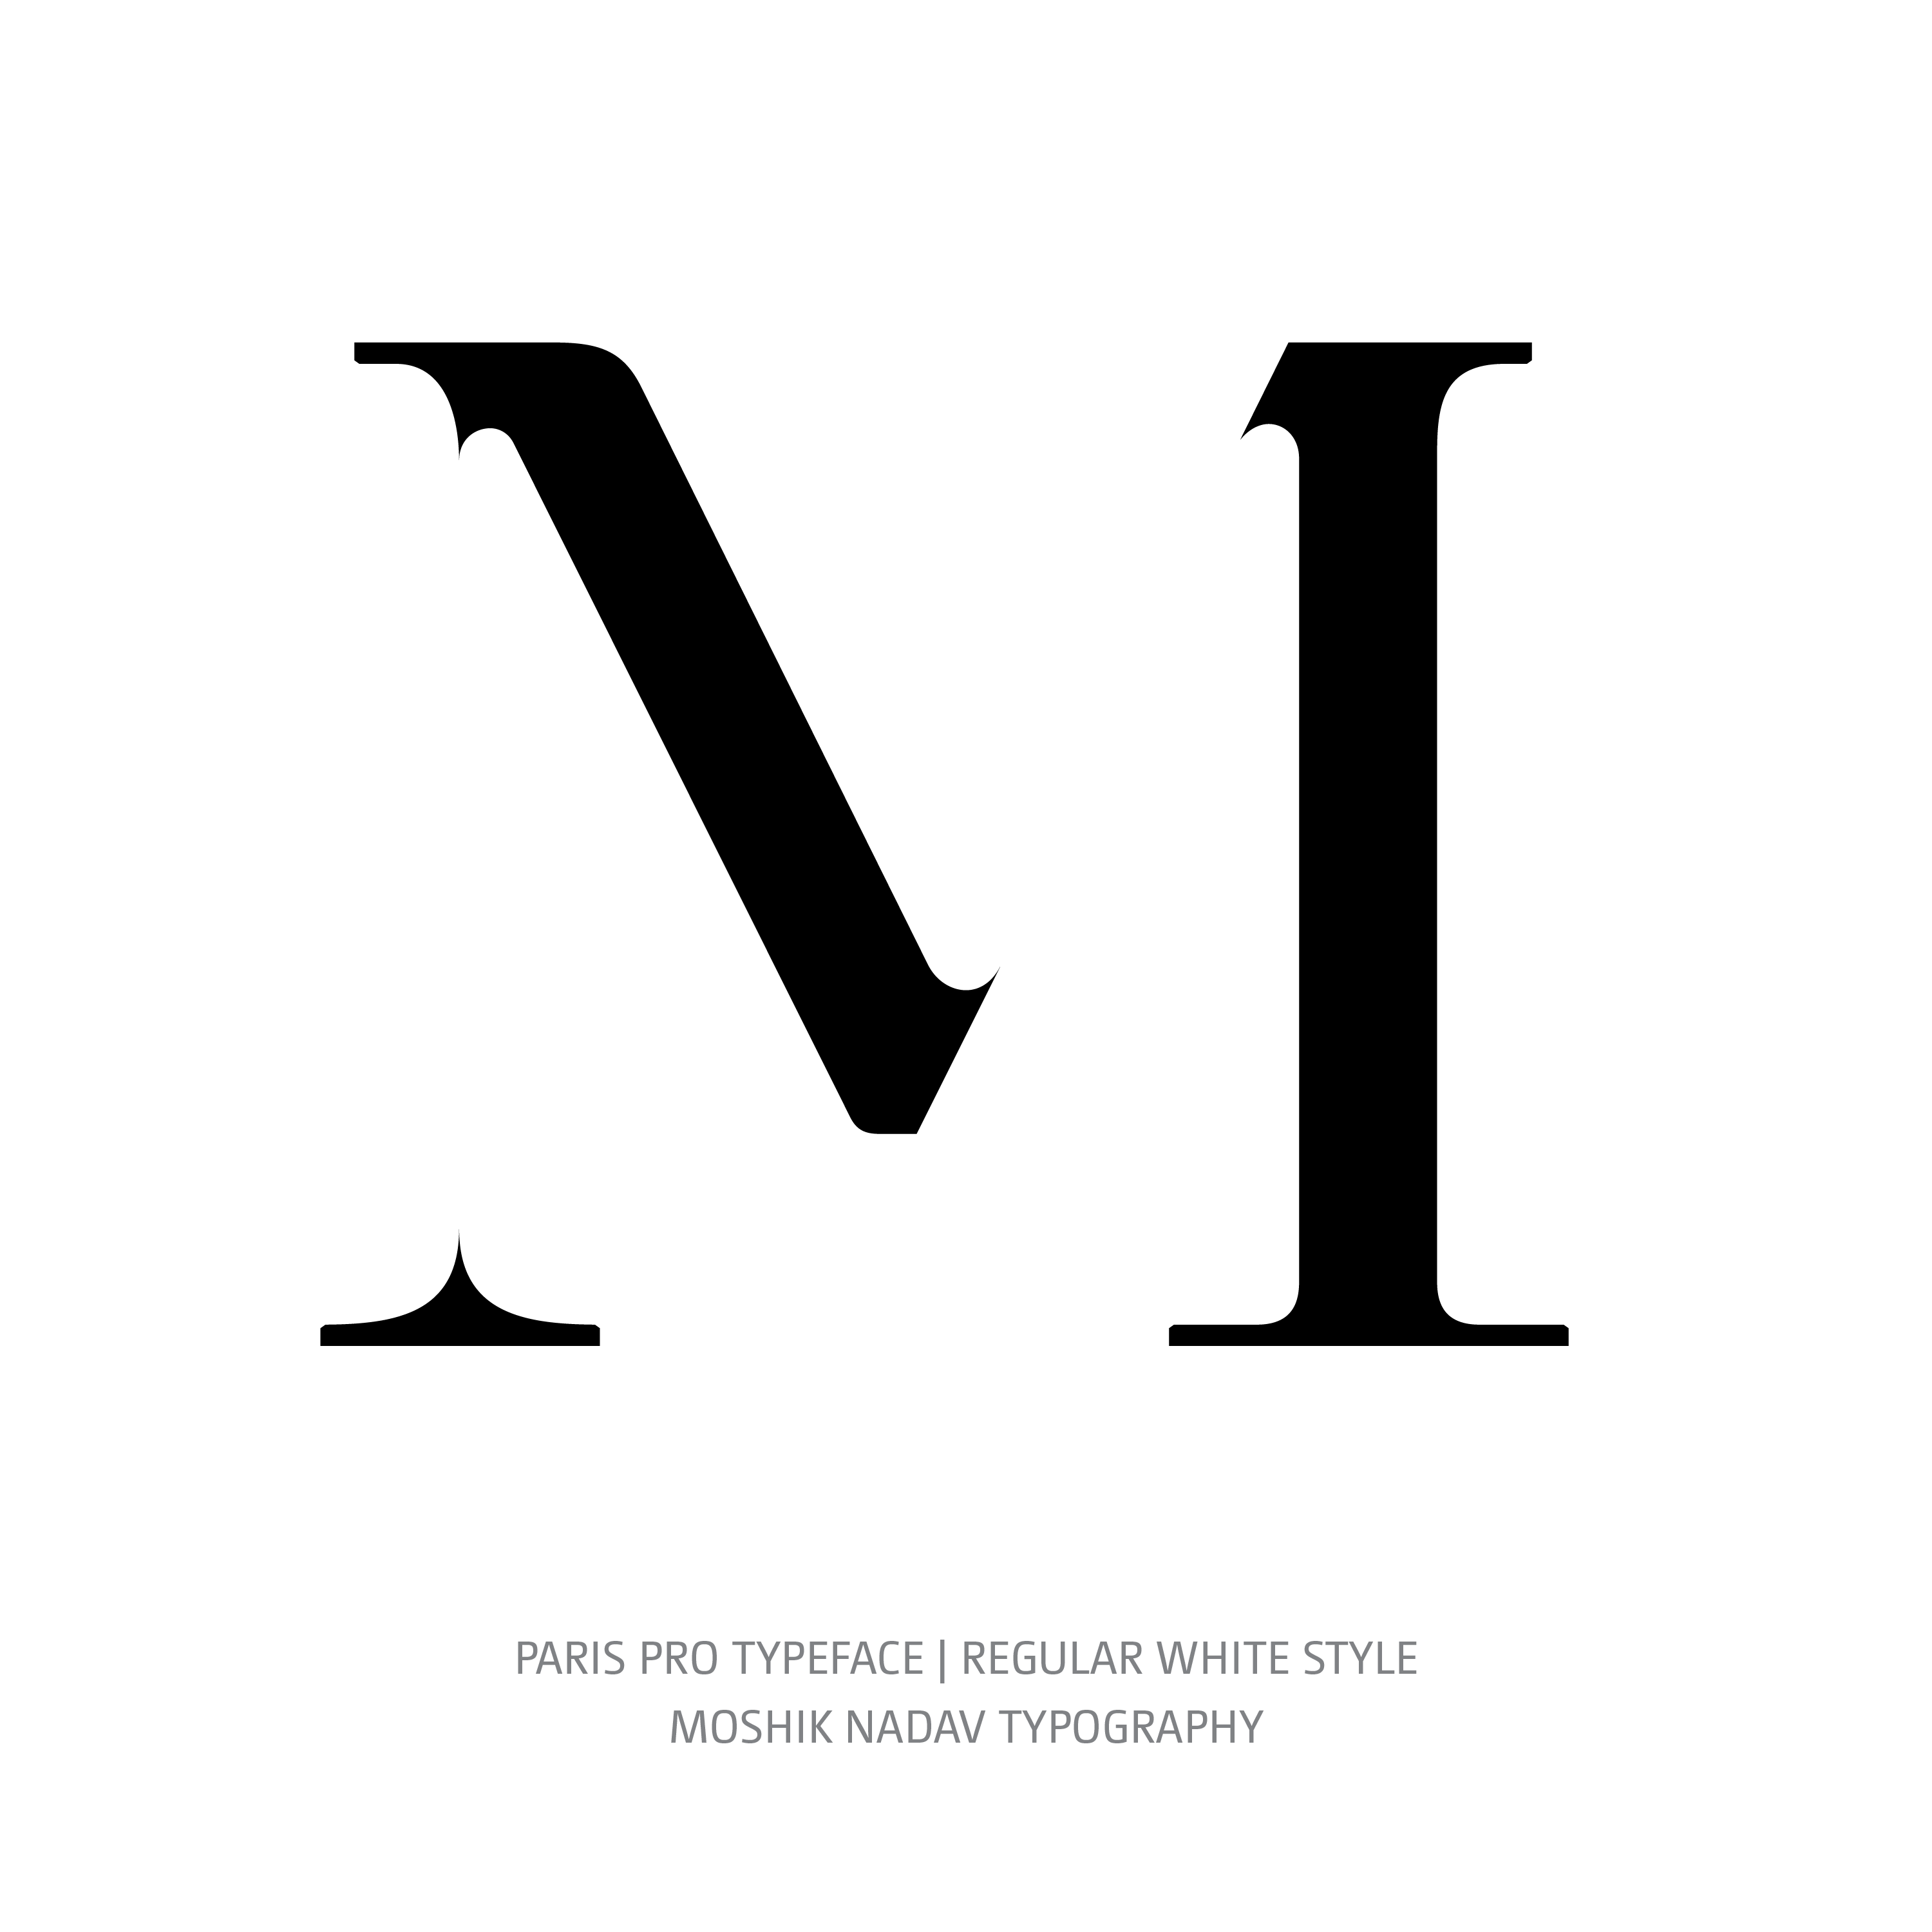 Paris Pro Typeface Regular White M